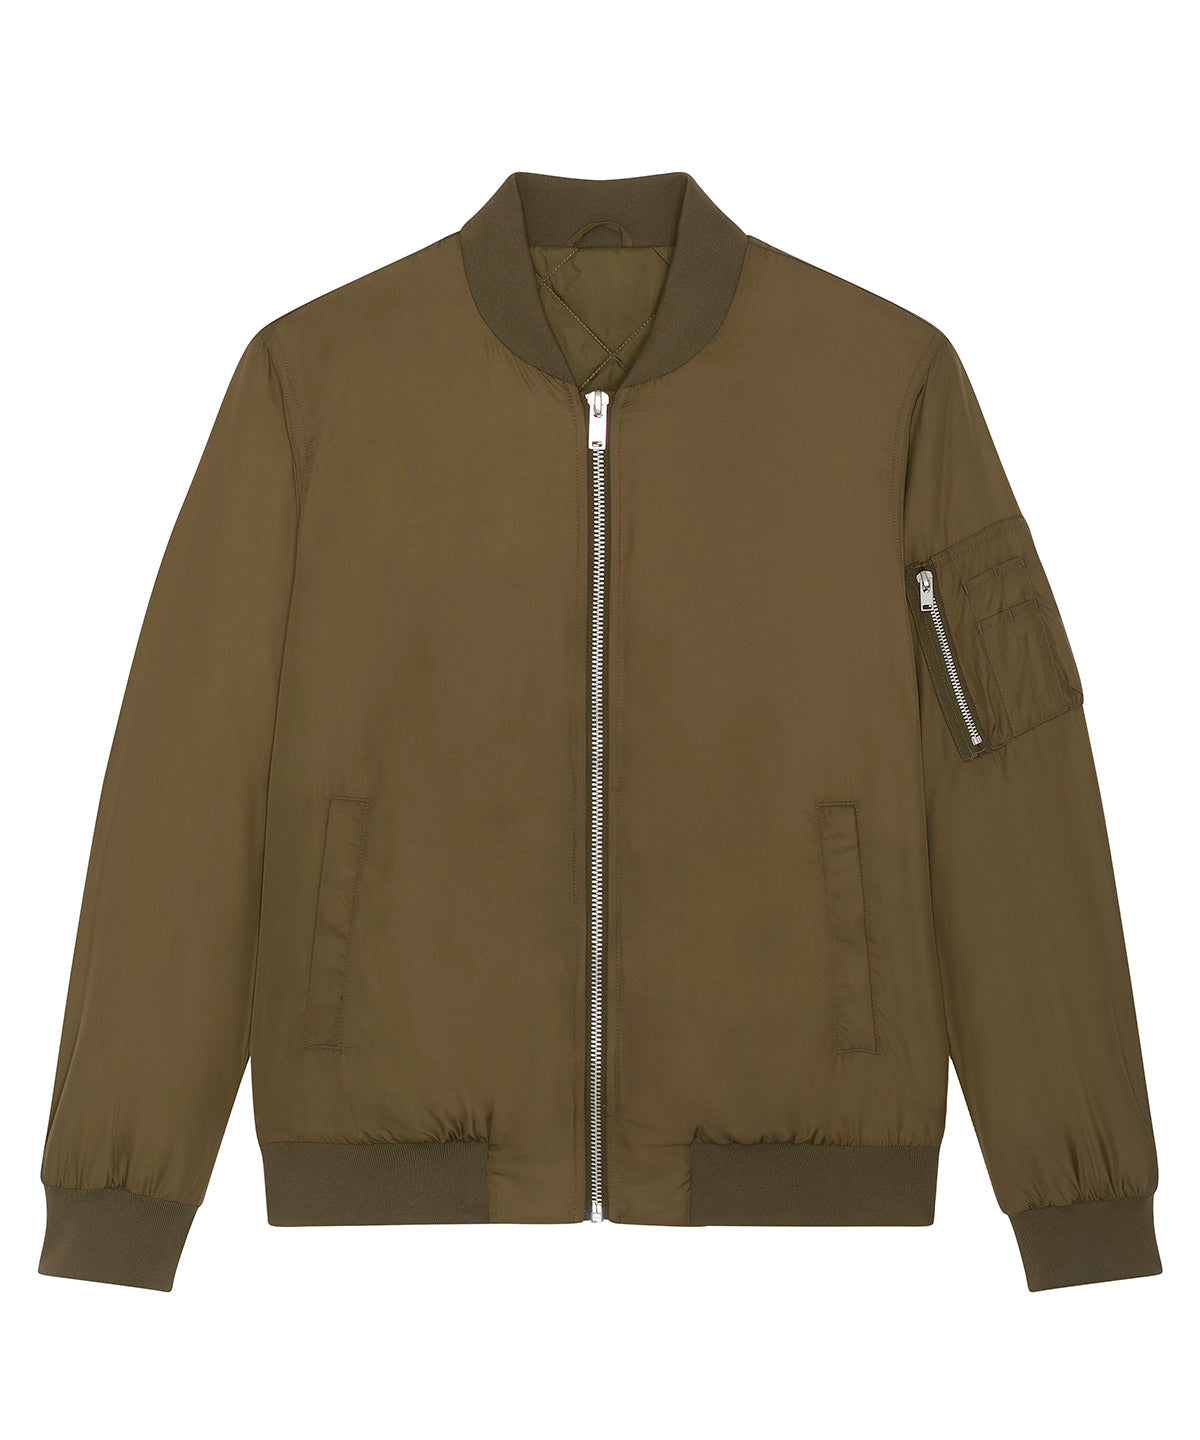 Personalised Jackets - Black Stanley/Stella Bomber jacket with metal details (STJU844)